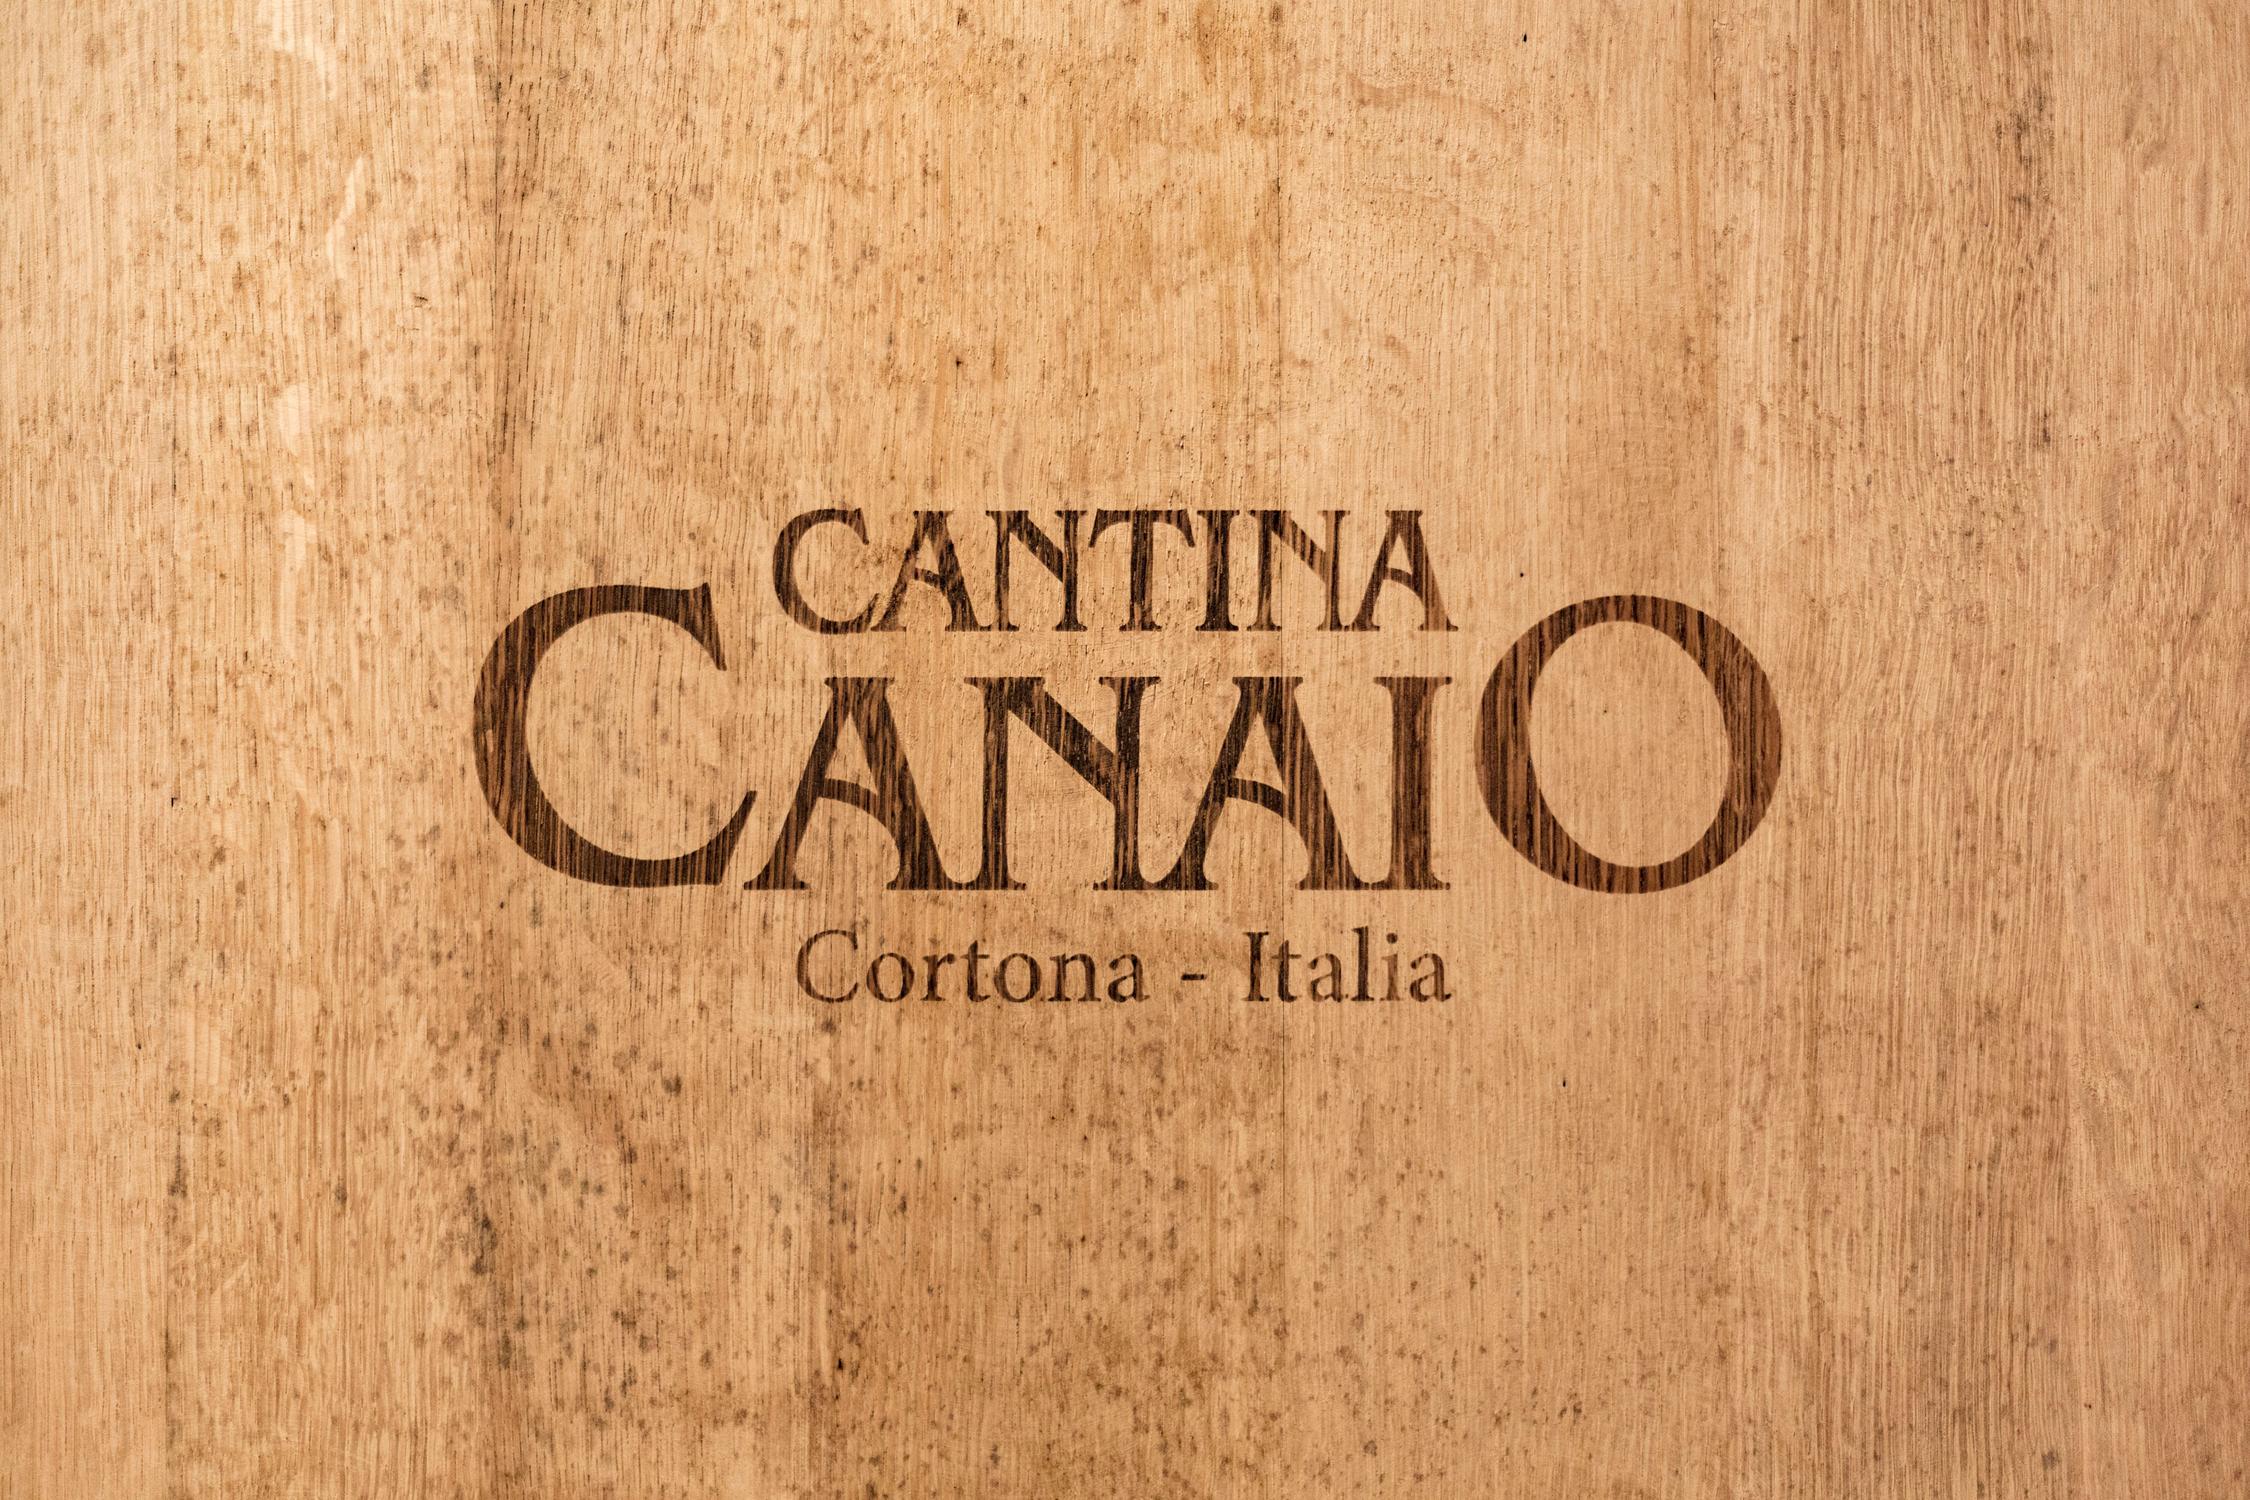 Cantina Canaio, distillati e grappe di Toscana con produzione a Cortona